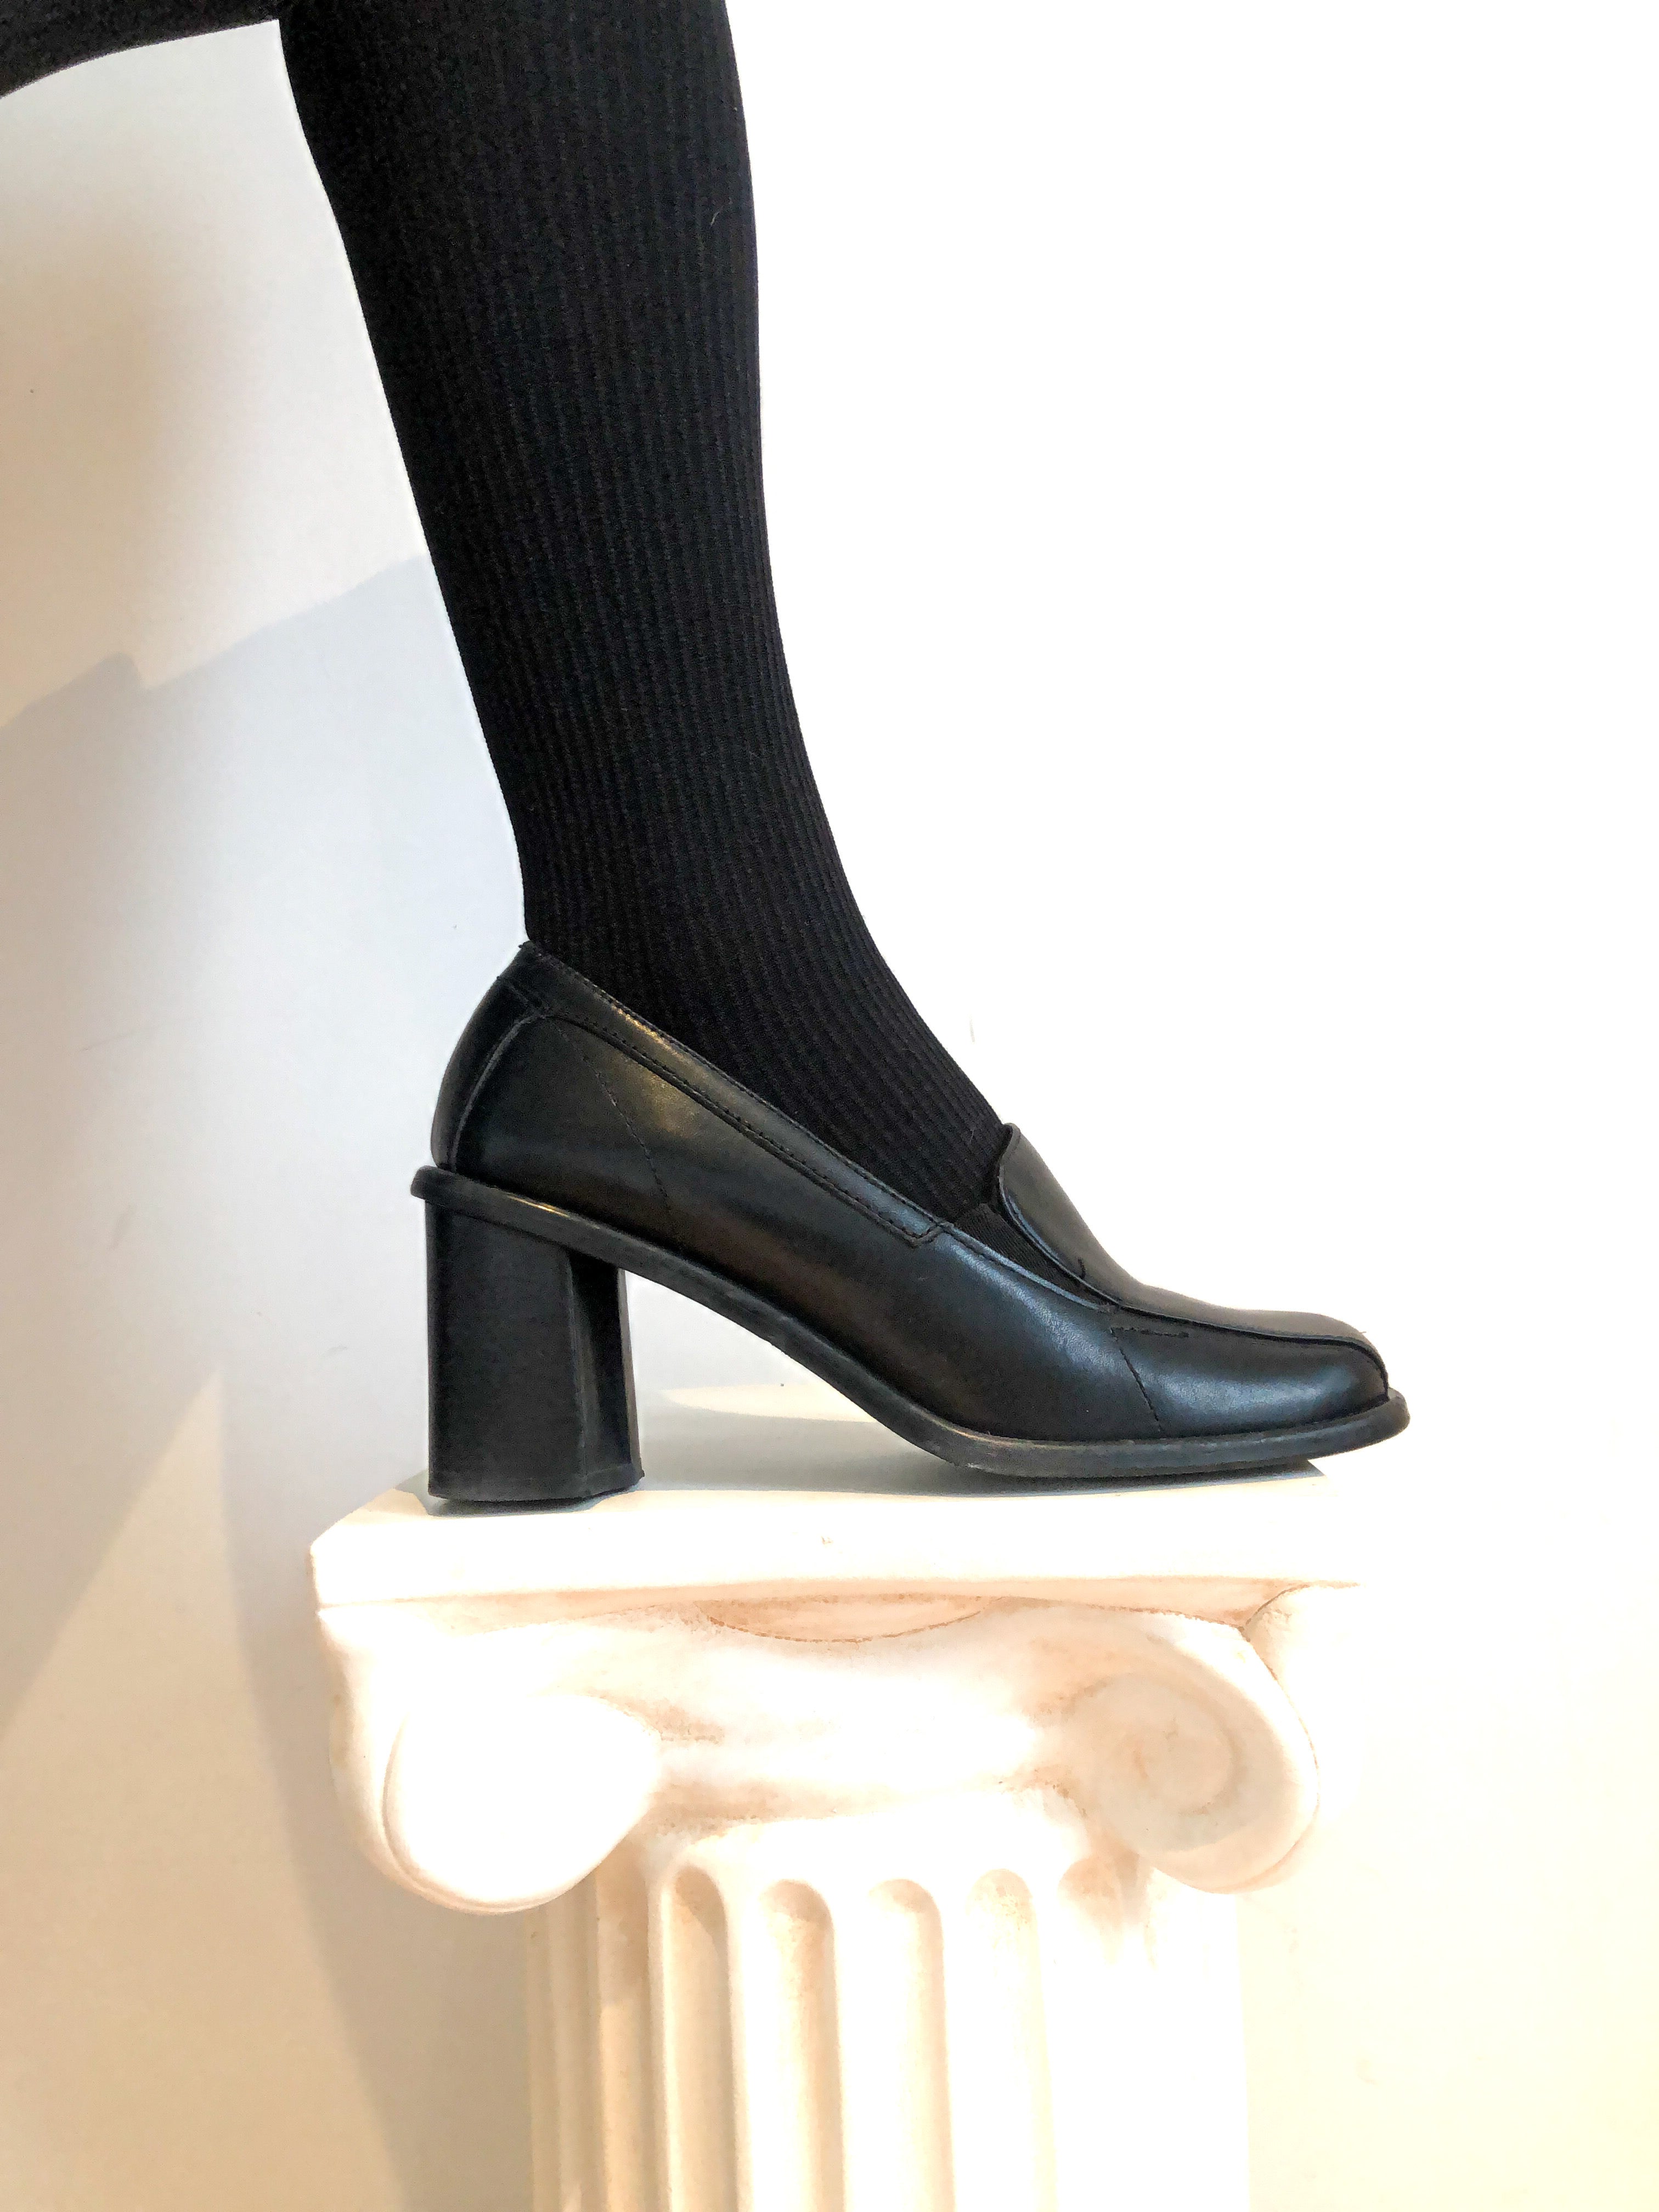 Black Leather Loafer Chunky Heel Shoe, US Size 7 Women's, 1990s Vintag –  Covet Vintage